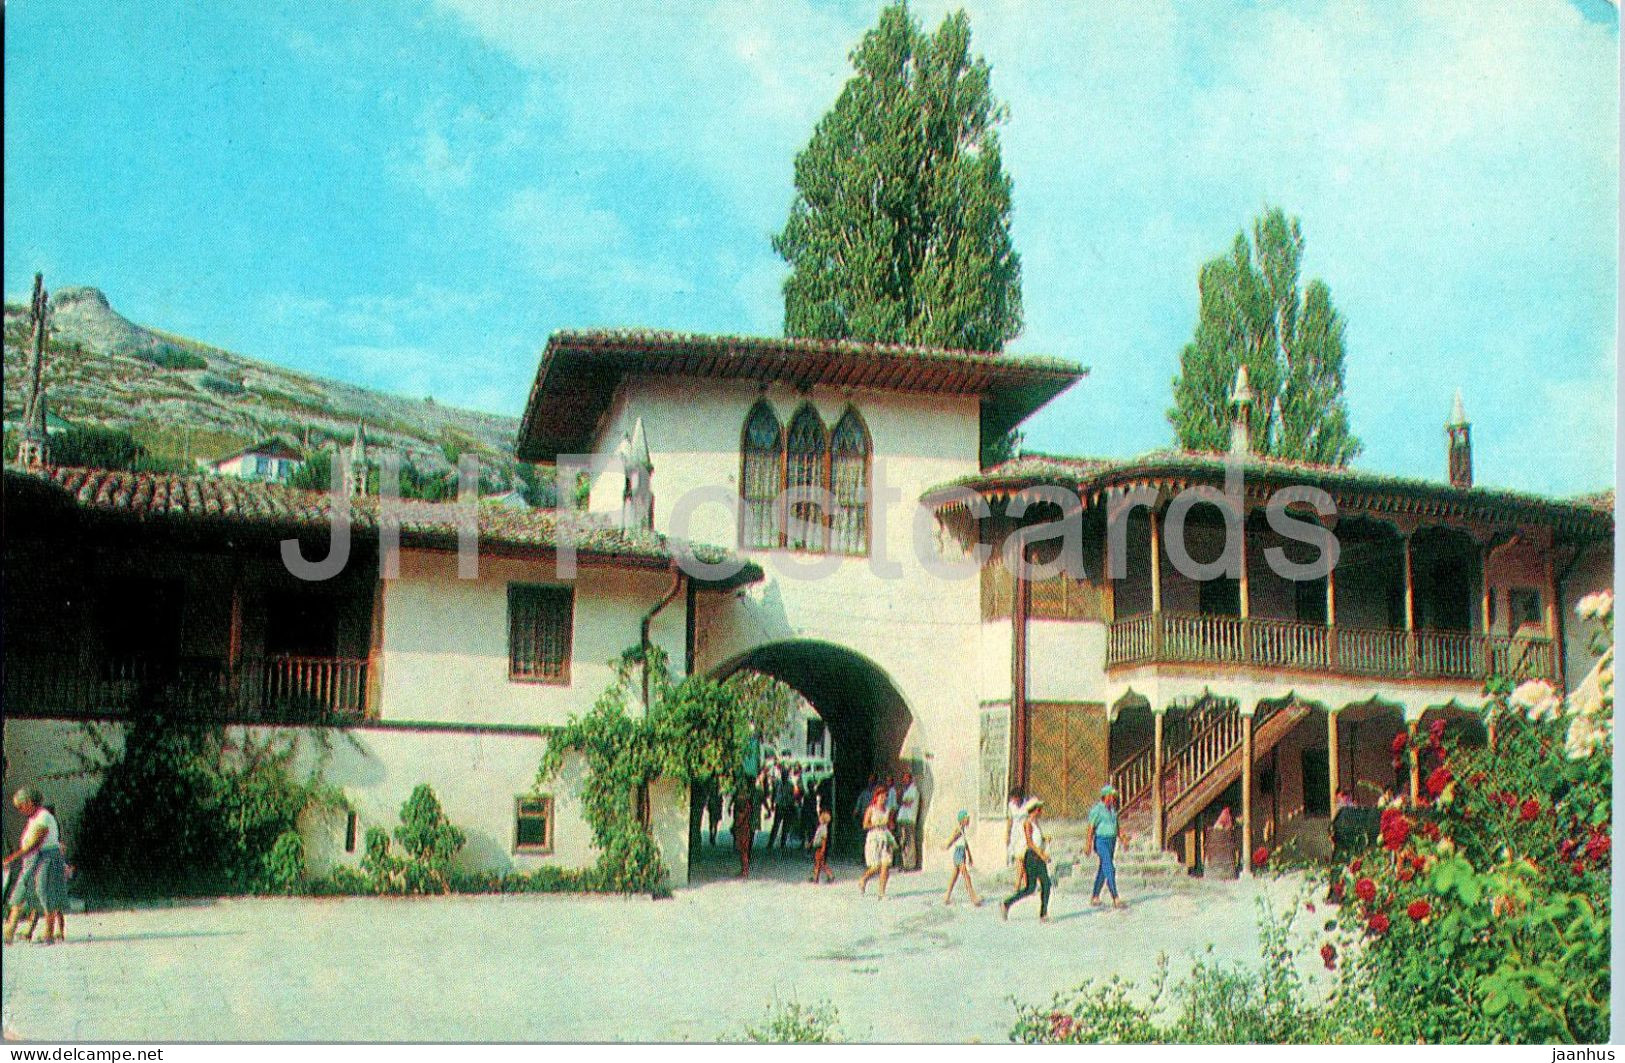 Bakhchisaray Historical Museum - Main Entrance And Former Khan Palace - Crimea - 1977 - Ukraine USSR - Unused - Ukraine